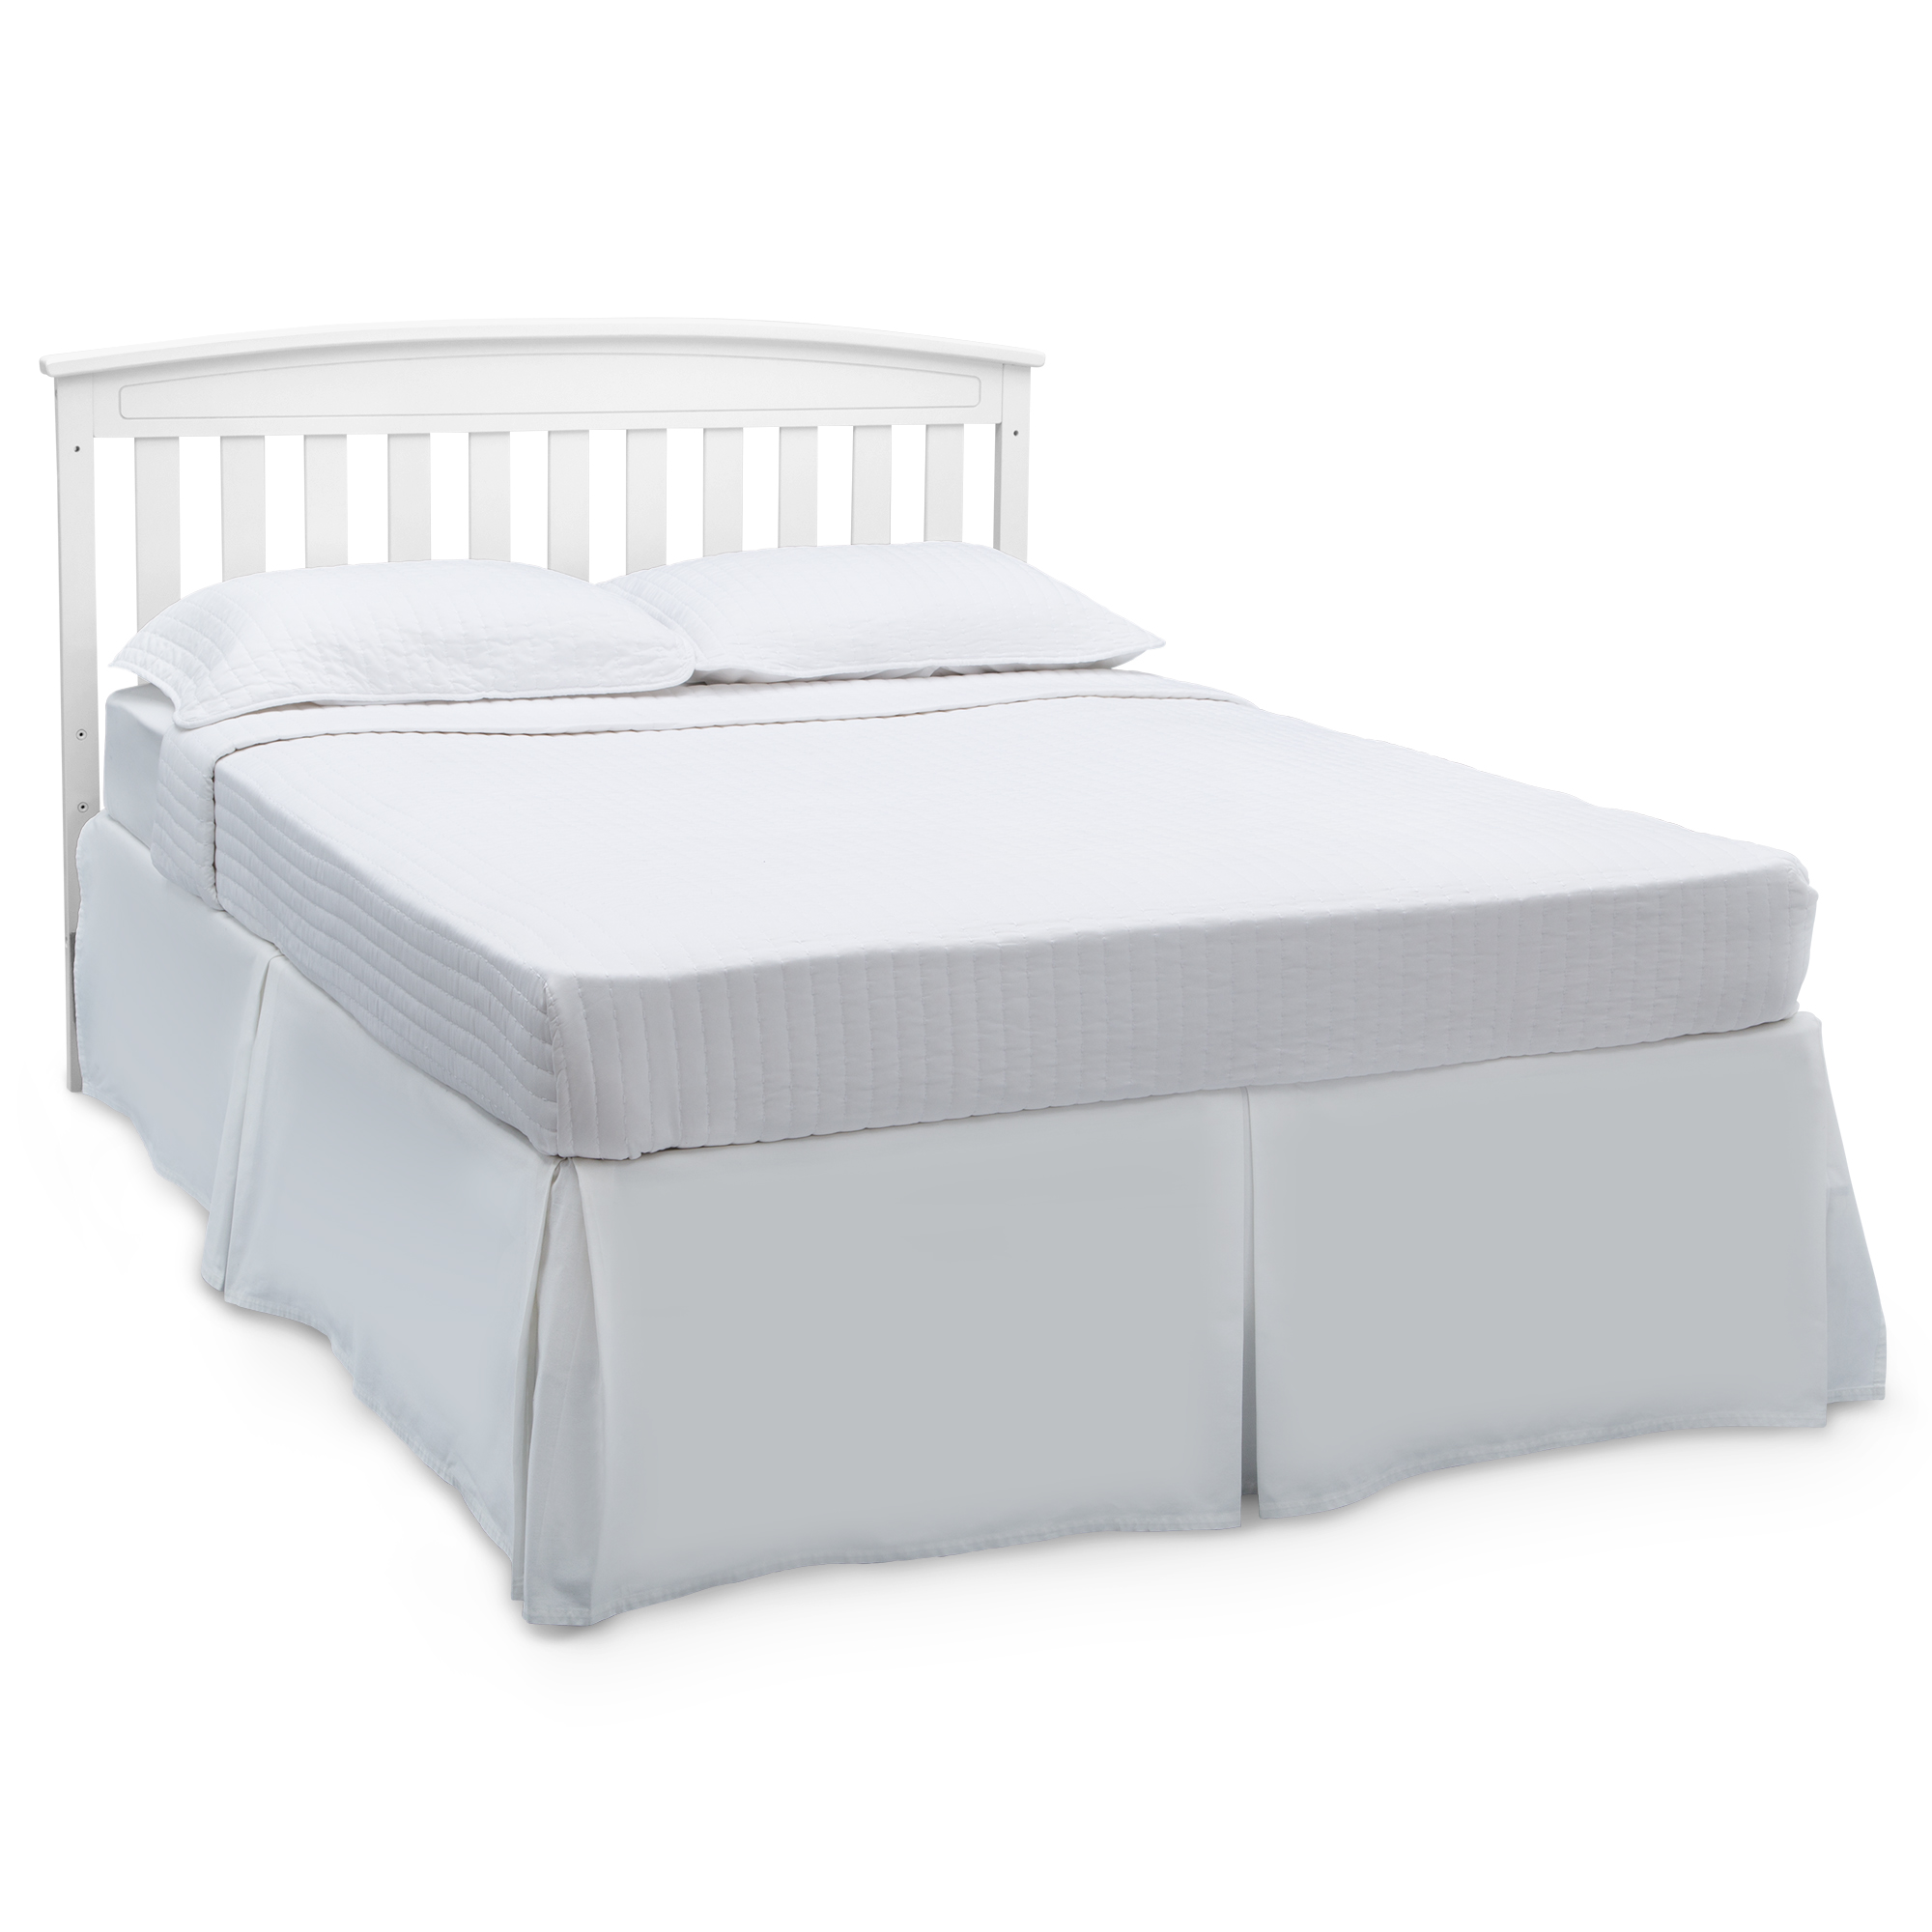 Delta Children Gateway 4-in-1 Convertible Baby Crib, White - image 11 of 11